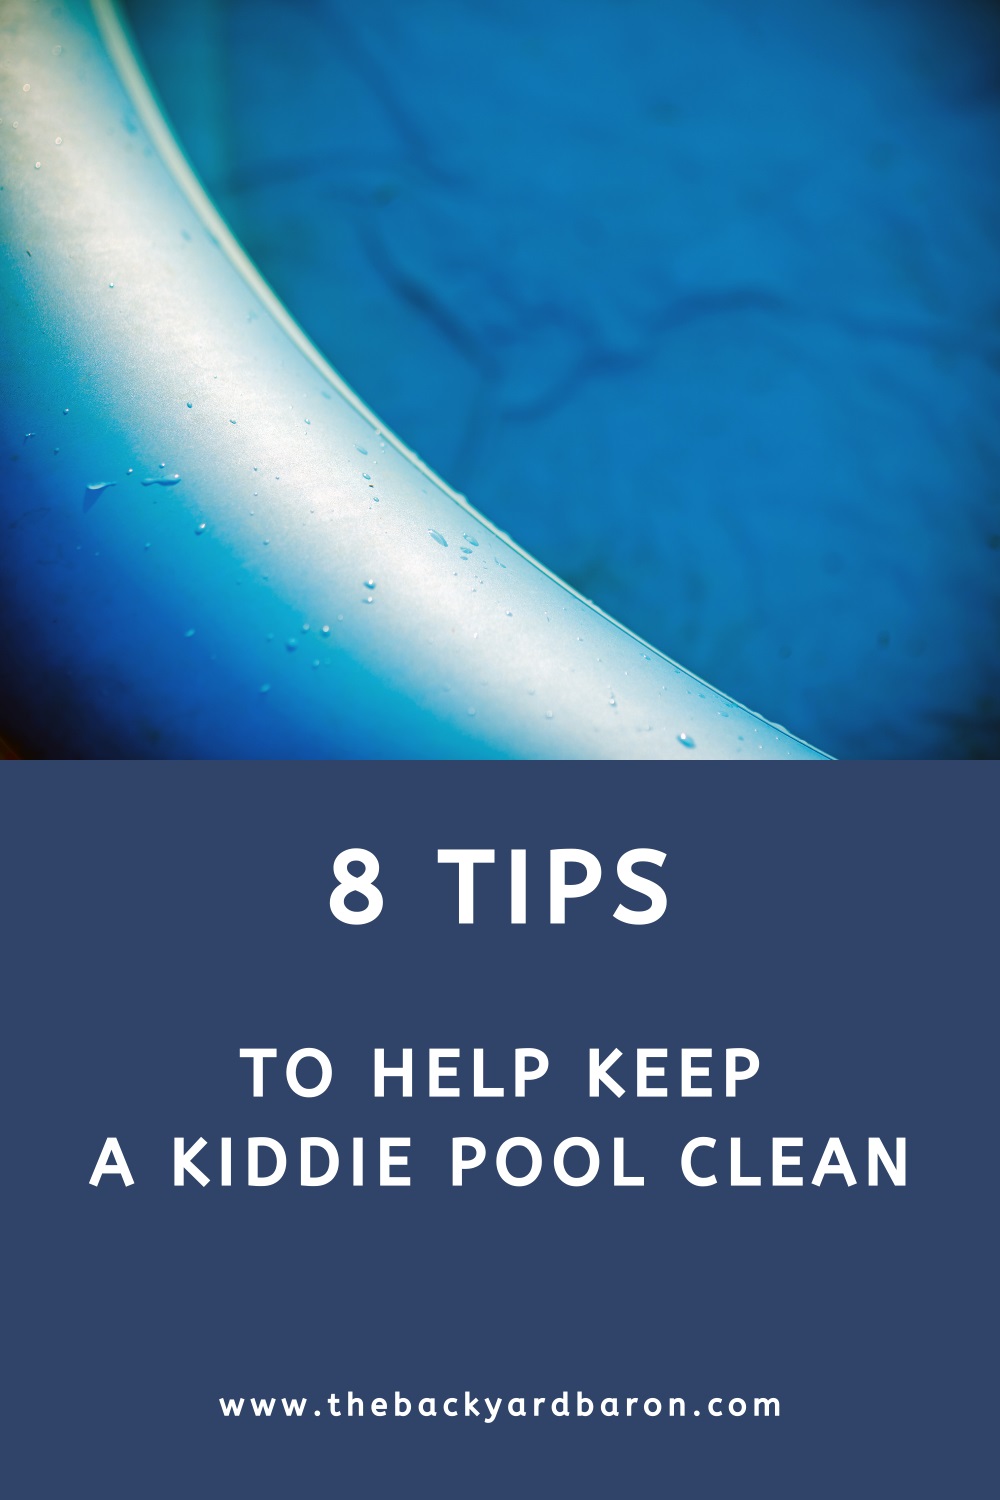 8 Tips to keep a kiddie pool clean